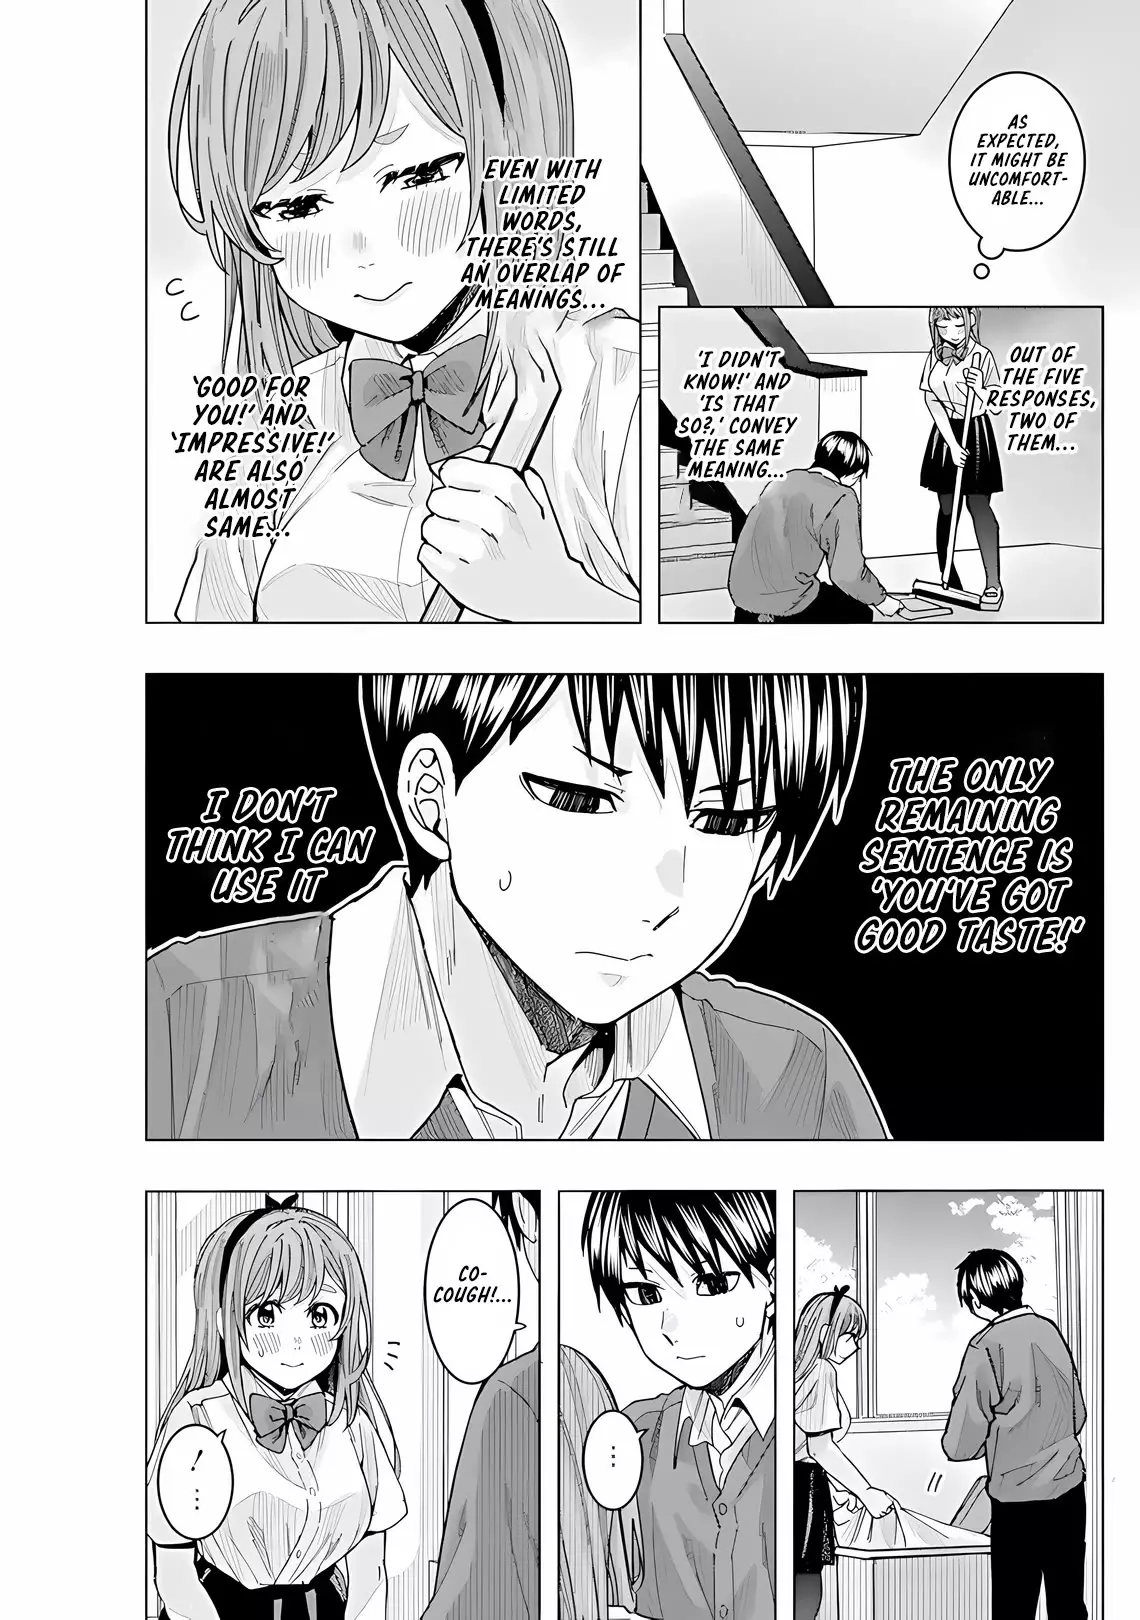 "nobukuni-San" Does She Like Me? - 27 page 12-076ebe68